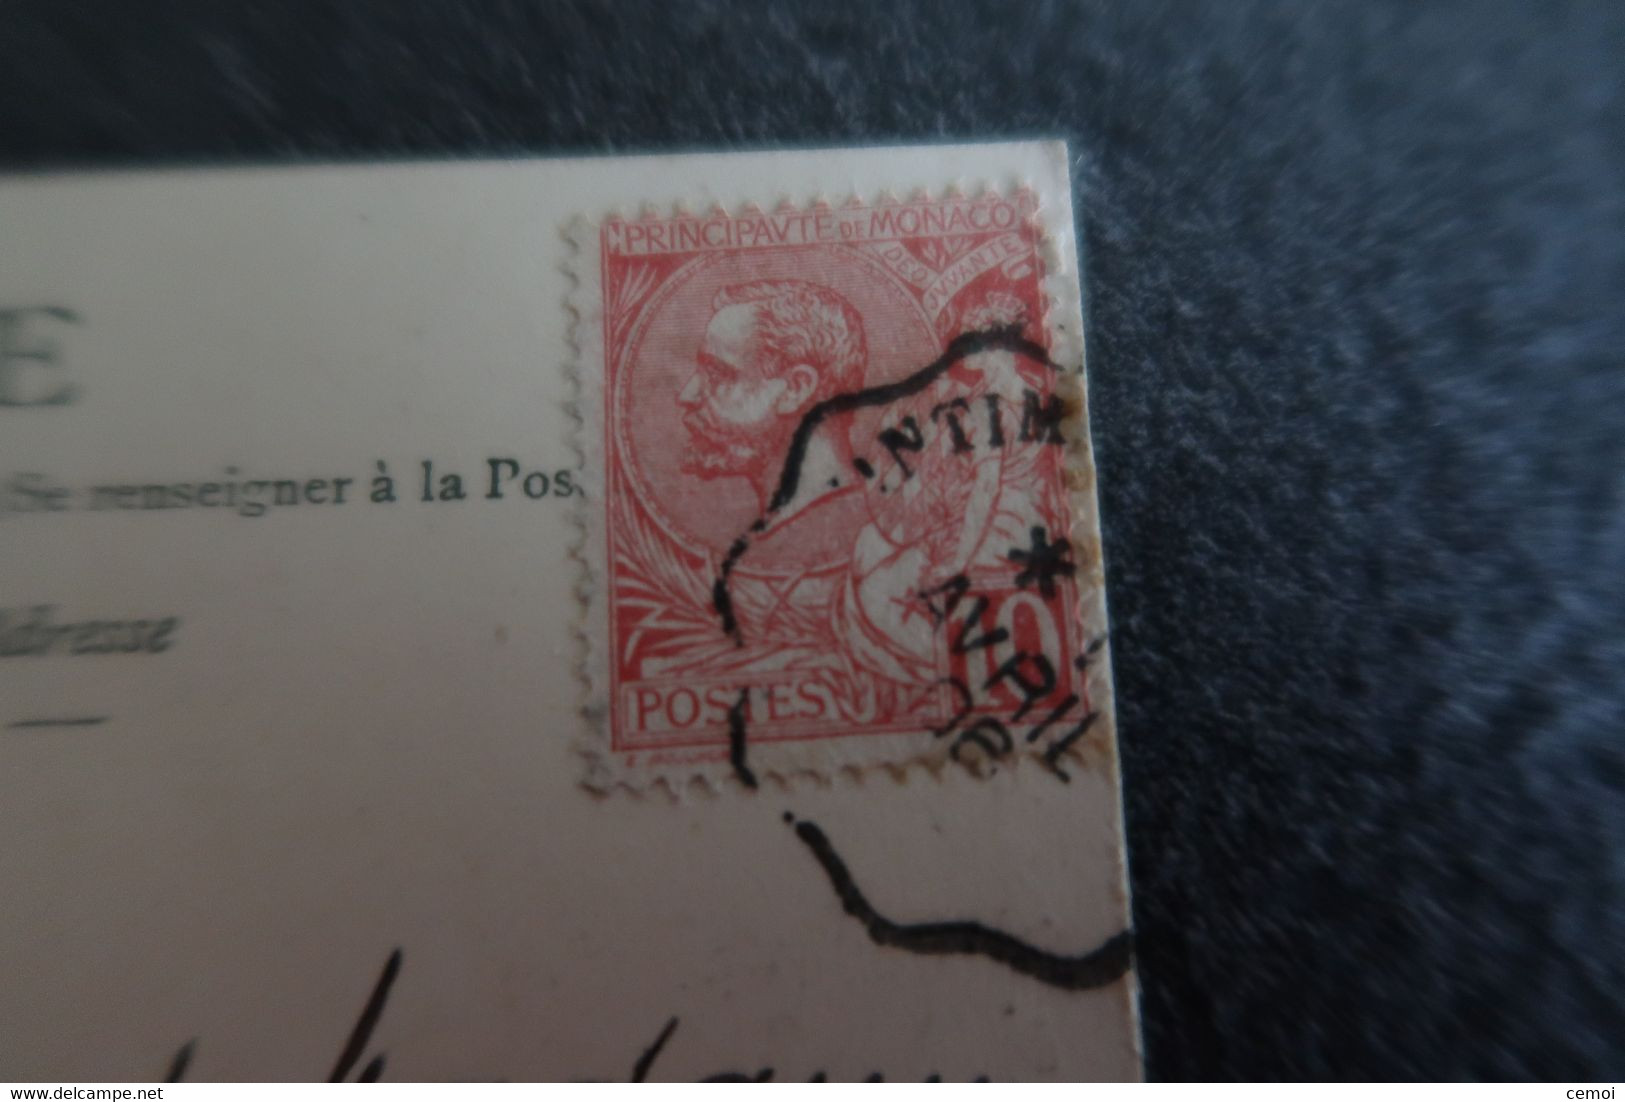 Lot de 18 CPA/CPSM de MONACO toutes timbrées - 23 timbres monégasques dont 19 timbres différents + 2 timbres taxe frança